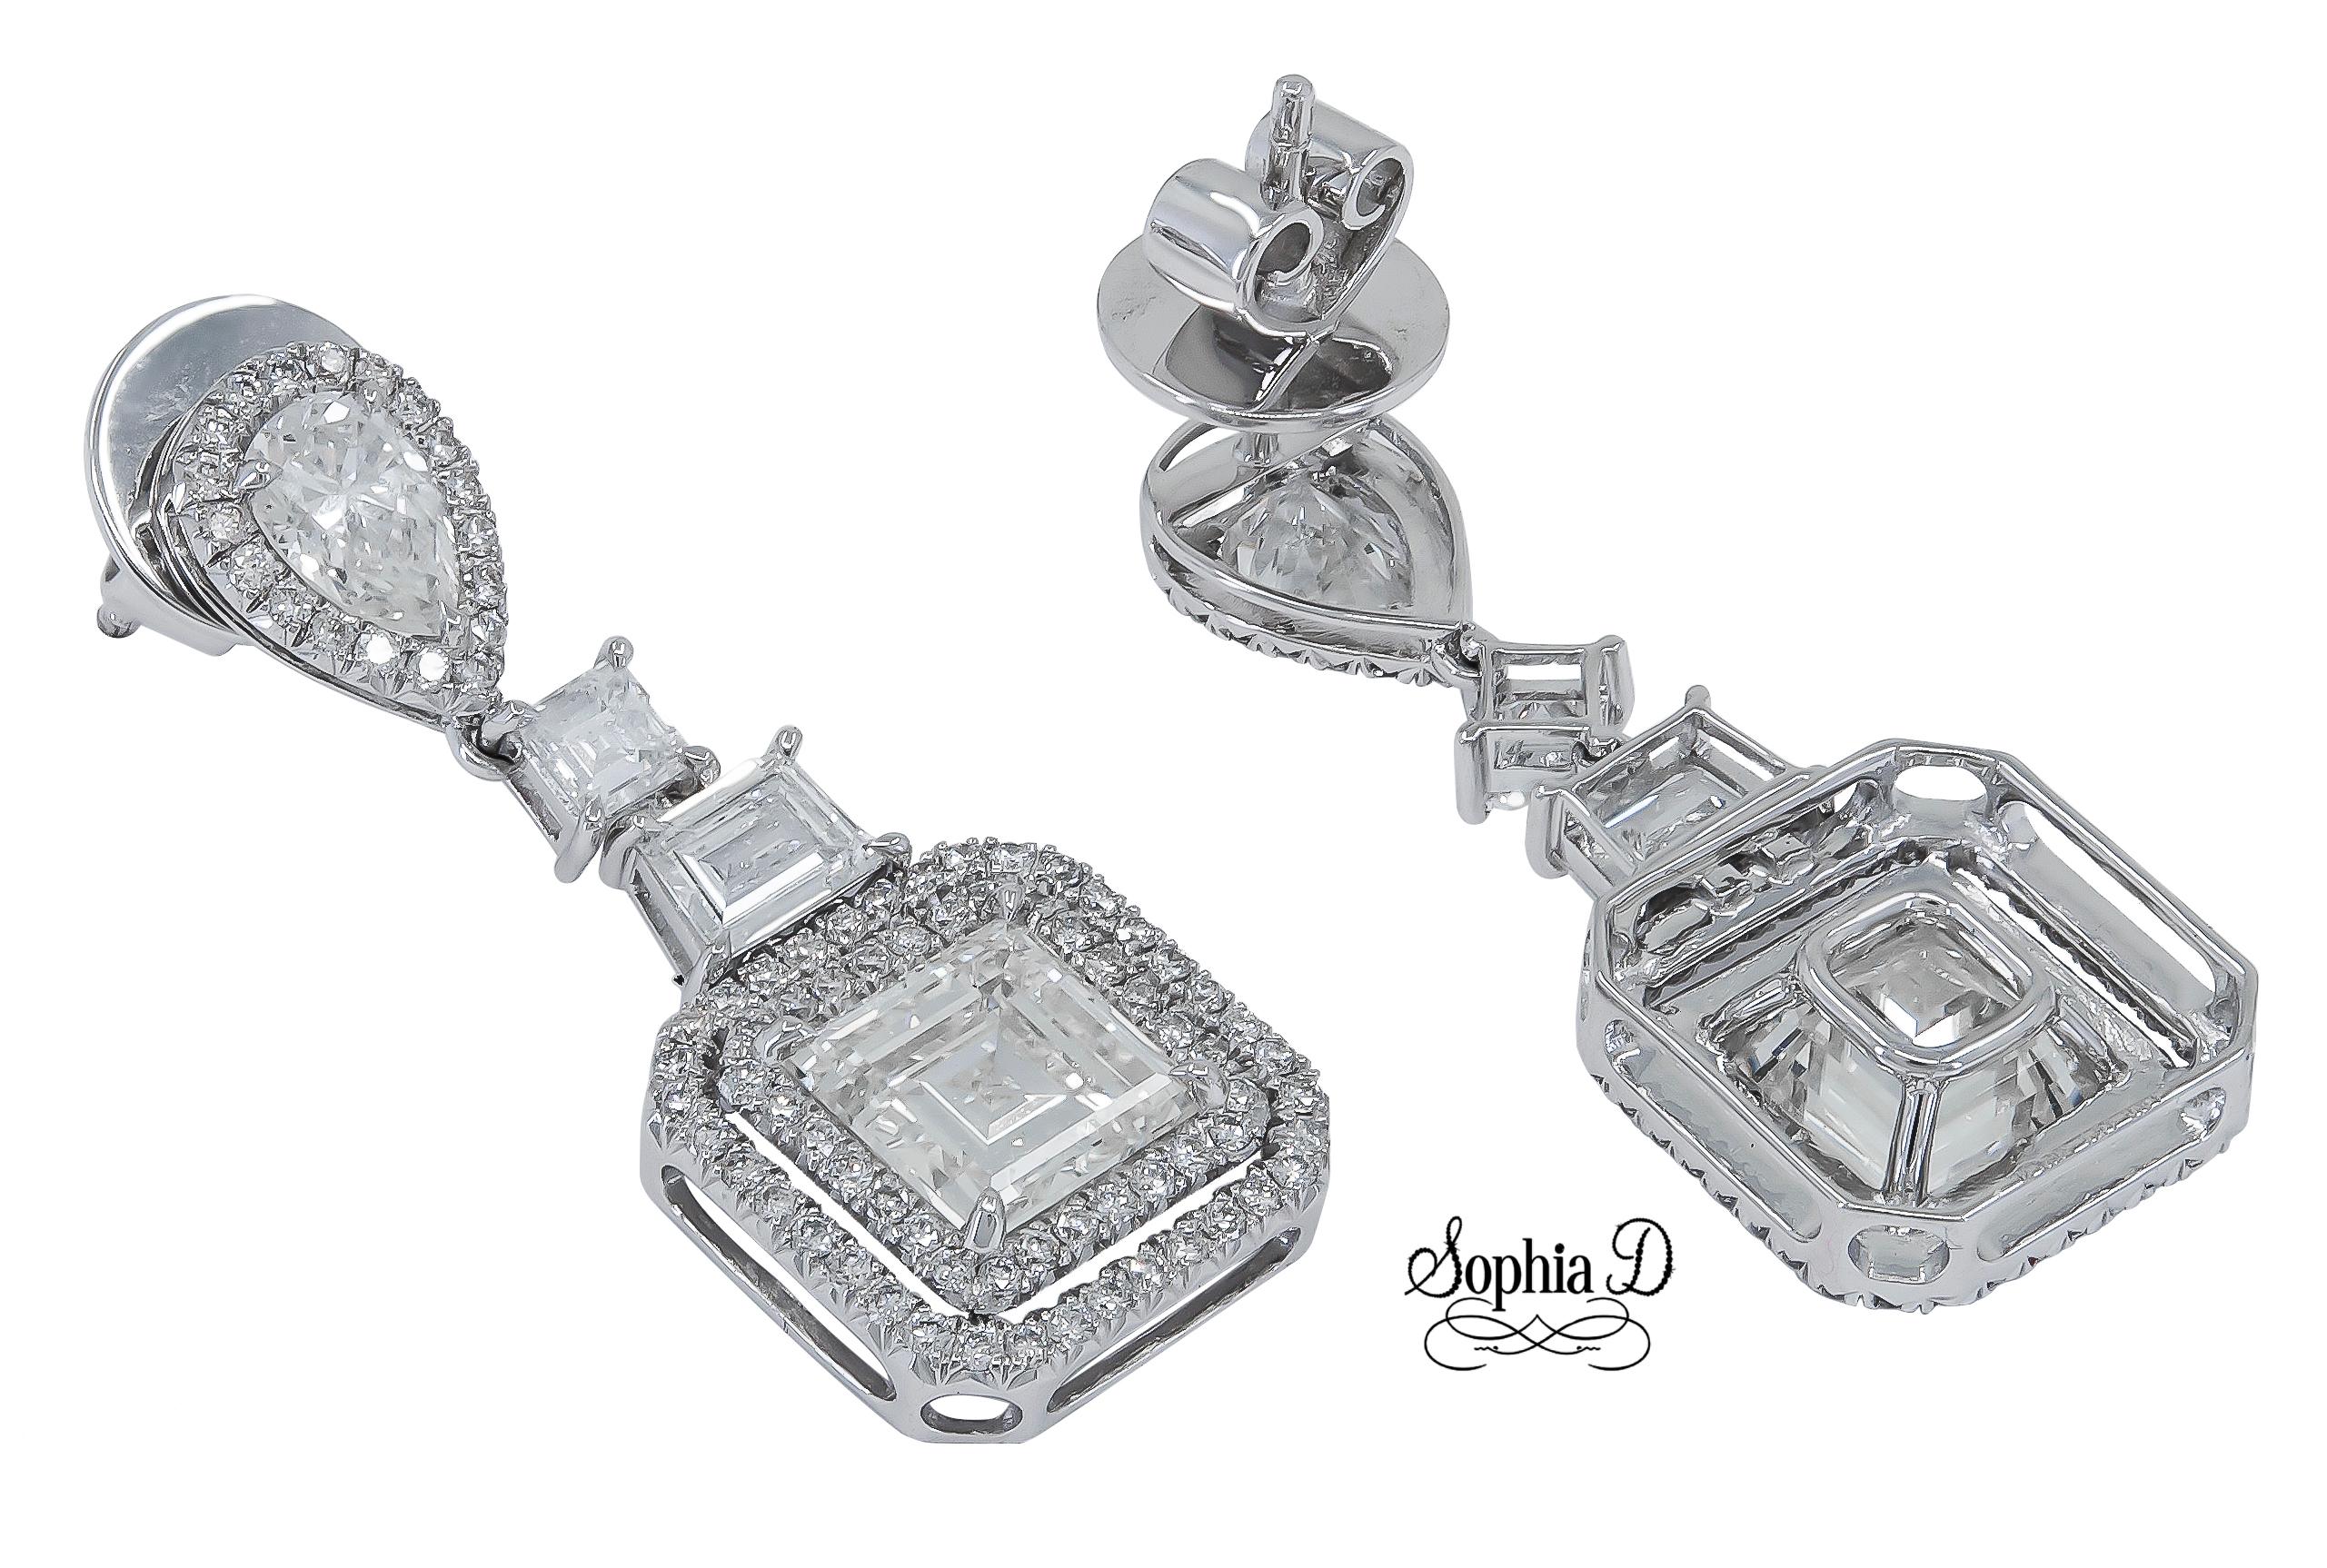 Wunderschöne Diamantohrringe aus Platin mit quadratischem Schliff und einem Gewicht von 3,02 Karat, umgeben von Diamanten mit einem Gesamtgewicht von 2,12 Karat.

Sophia D von Joseph Dardashti LTD ist seit 35 Jahren weltweit bekannt und lässt sich